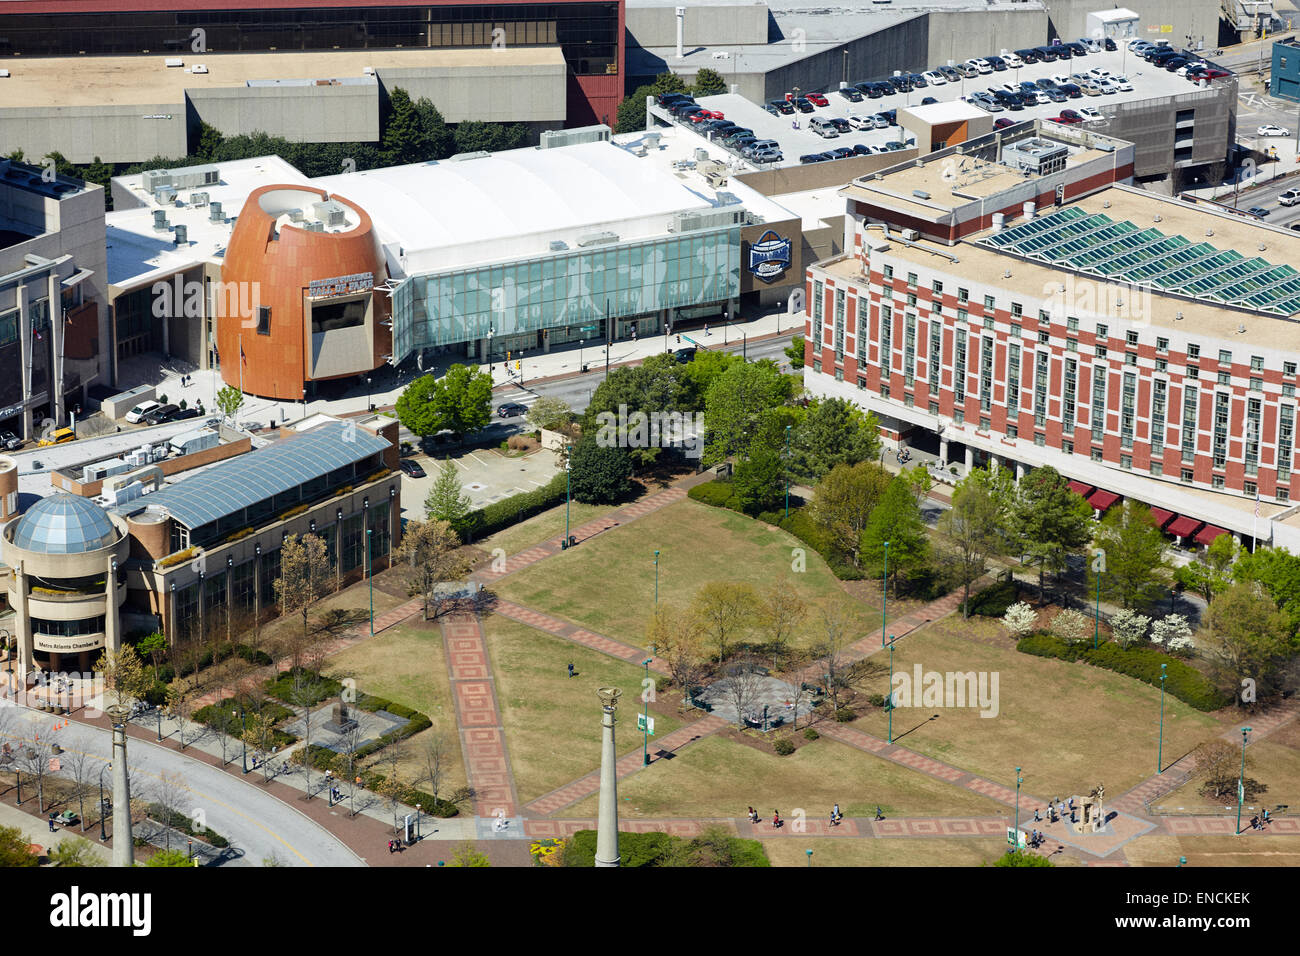 Die Innenstadt von Atlanta Atlanta in Georga USA abgebildet der College Football Hall Of Fame ist eine Hall Of Fame und Museum gewidmet Colle Stockfoto